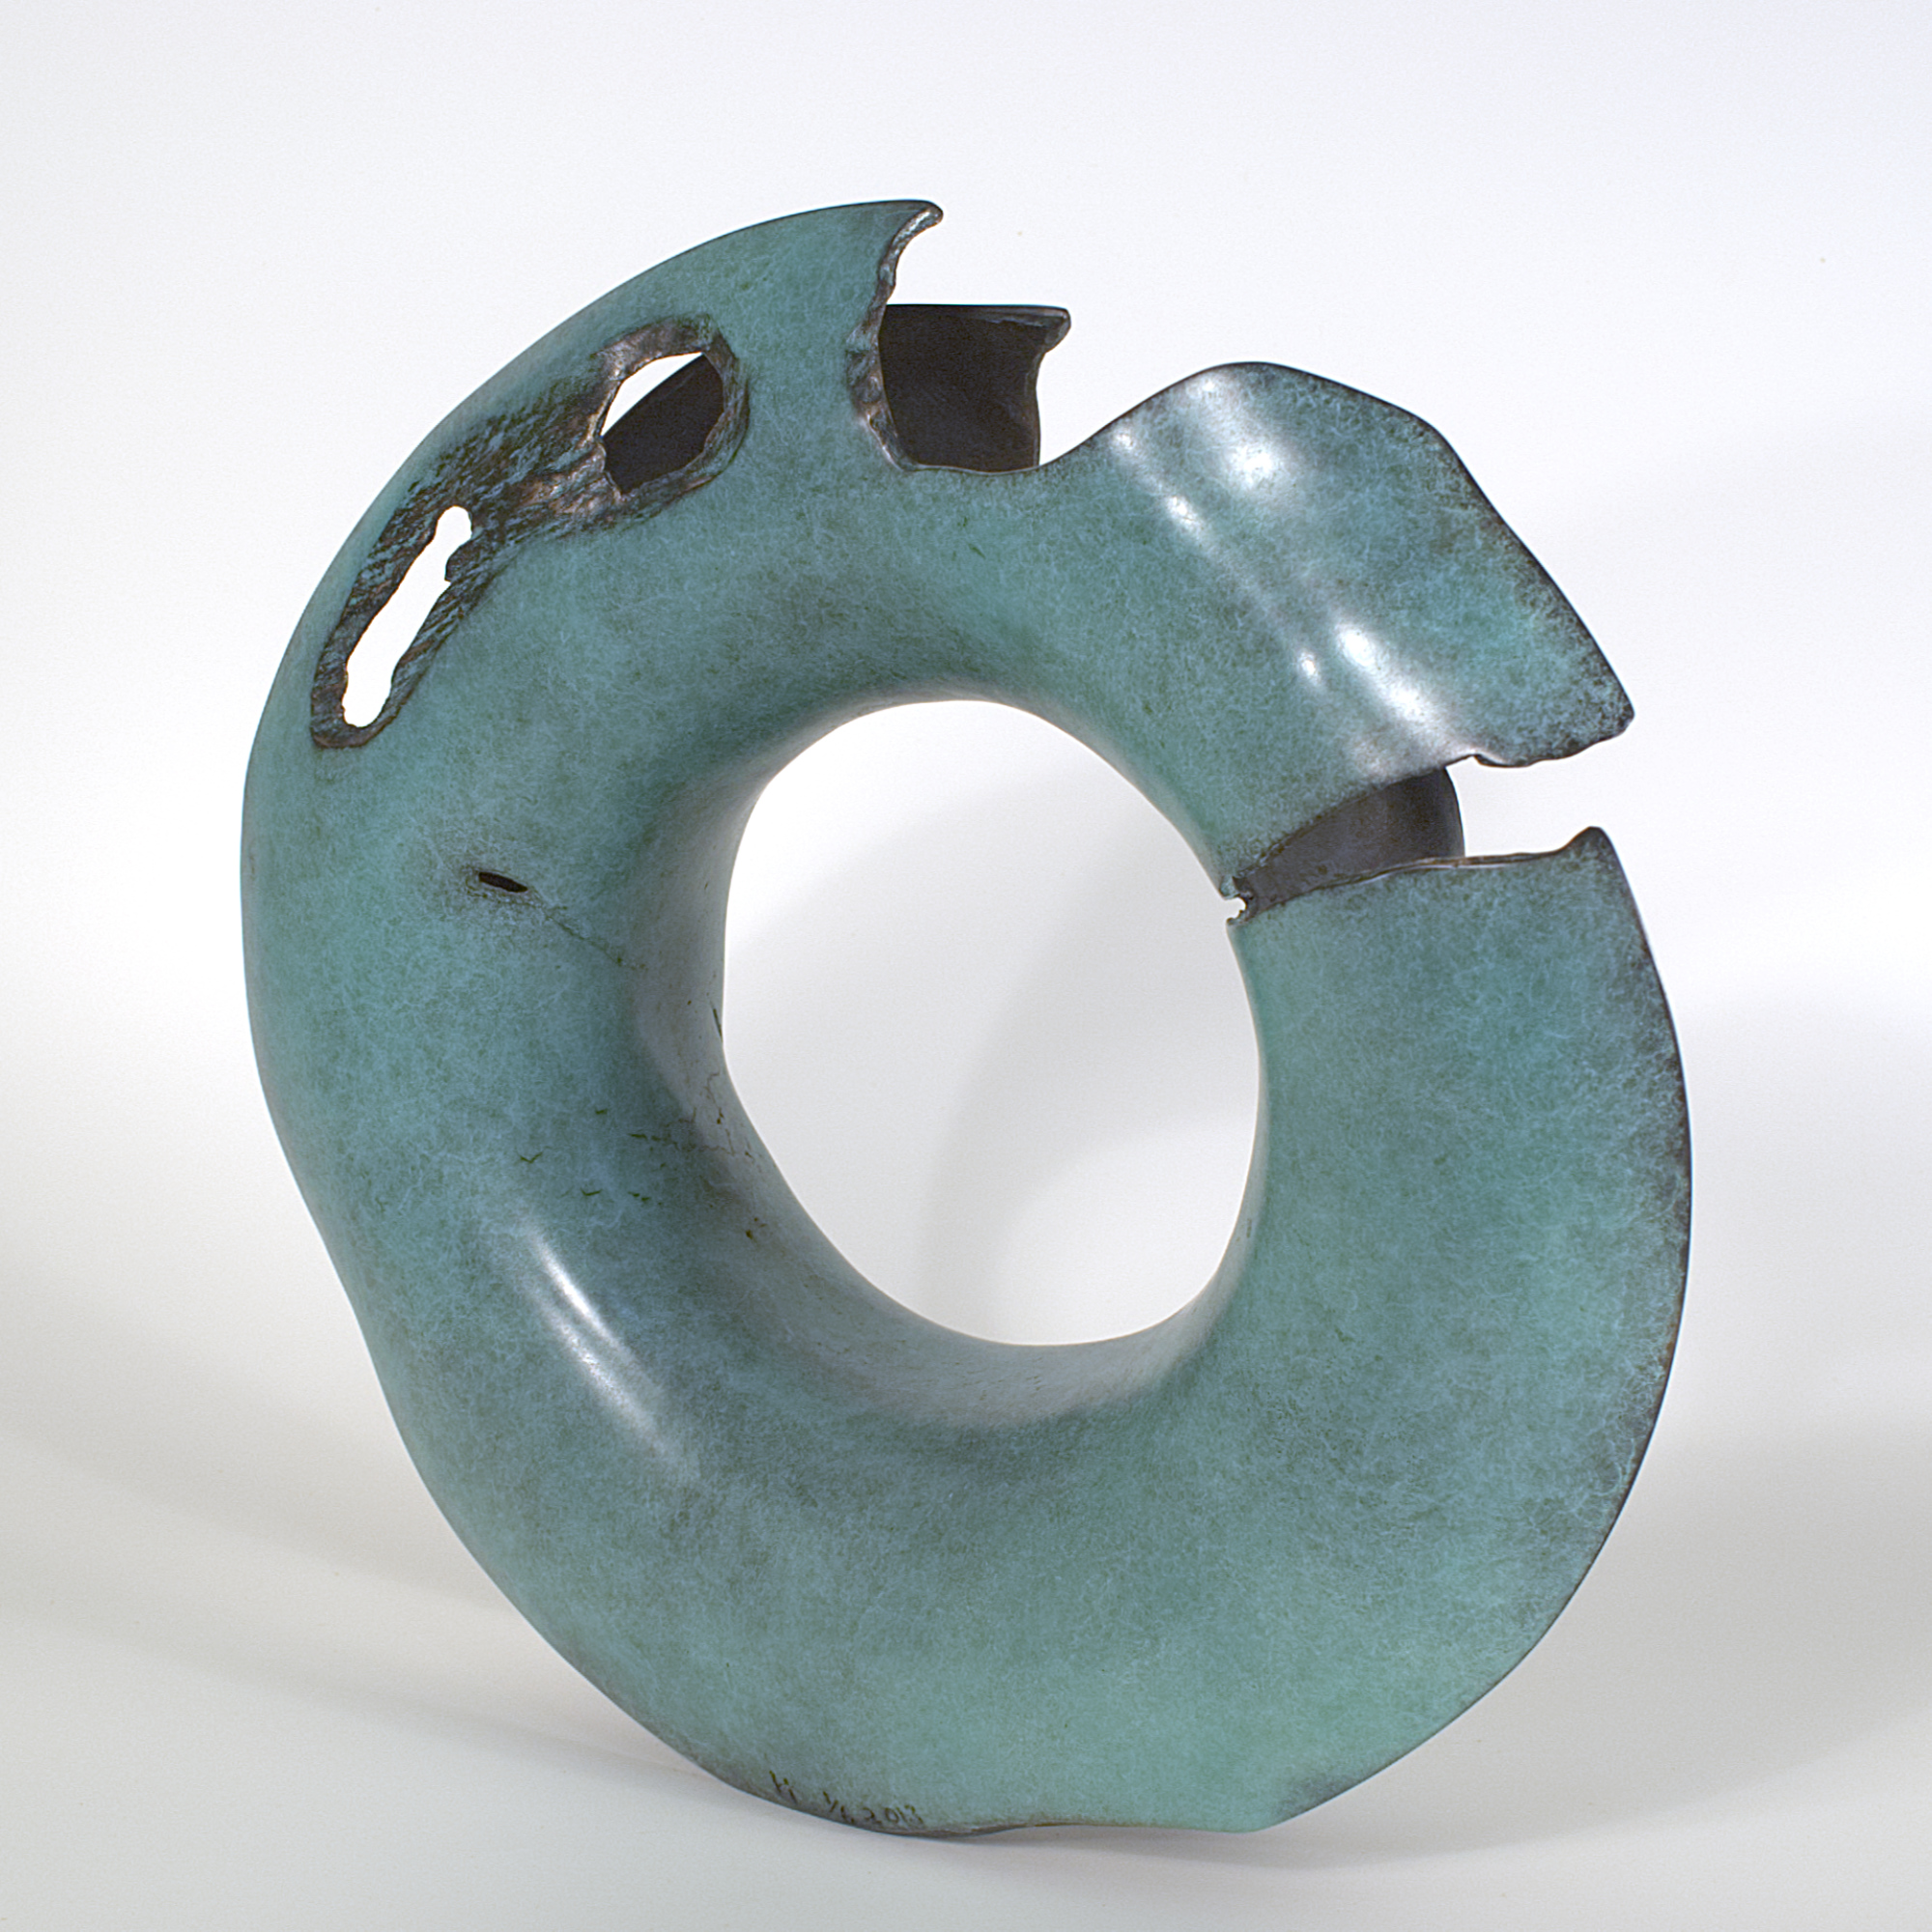 Annular form #3. Modern bronze sculpture by Steve Howlett. 2013